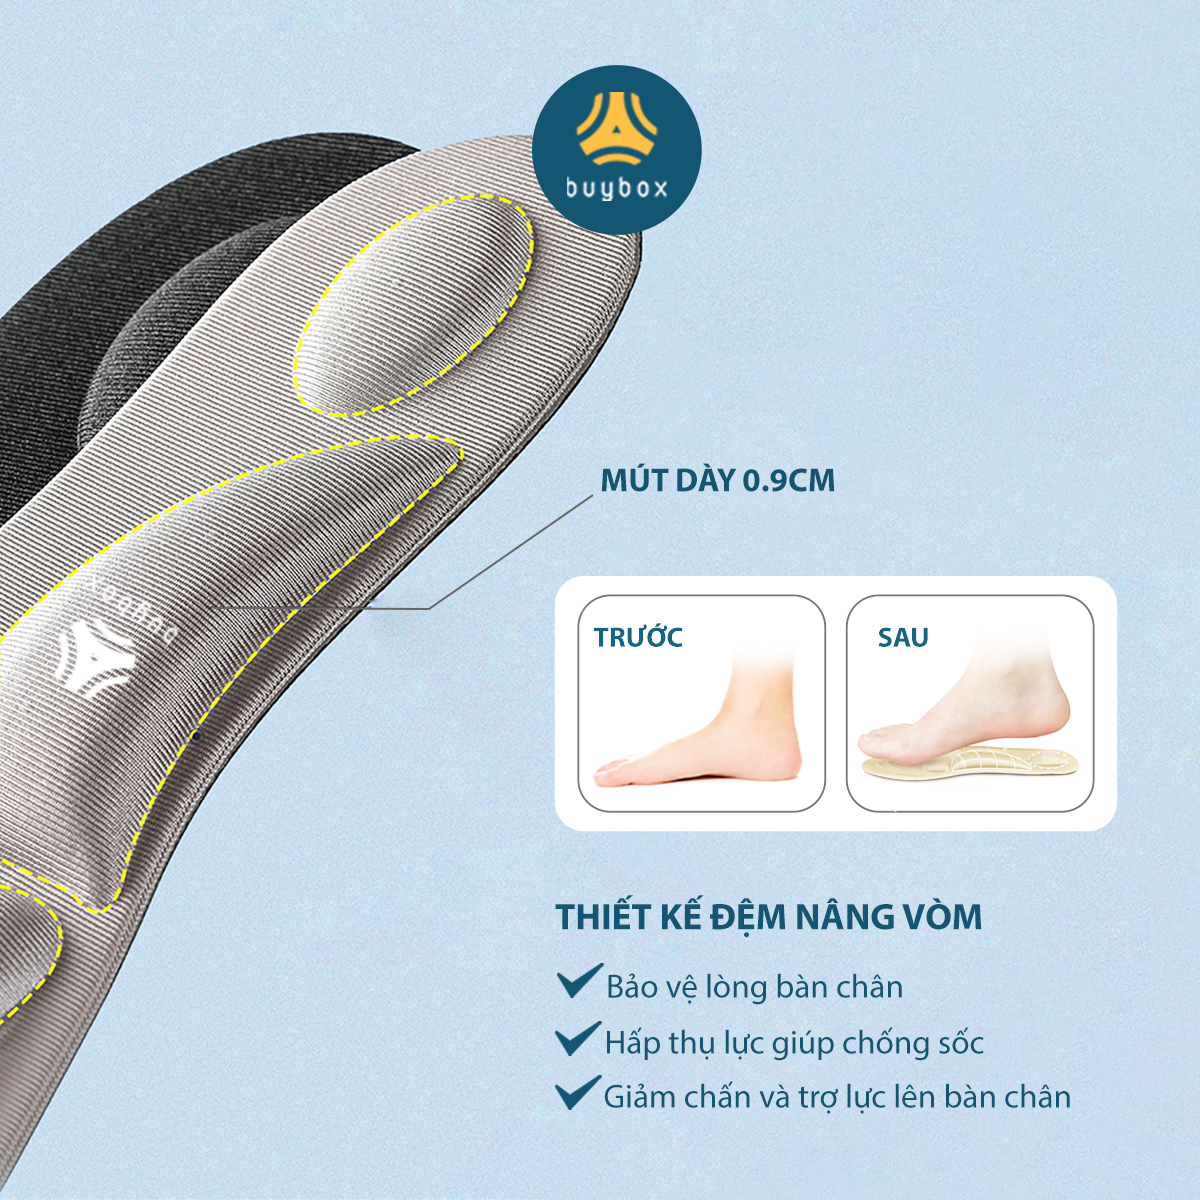 01 cặp lót giày thể thao 4D có gờ chống sốc giảm mỏi gang bàn chân - buybox - BBPK36